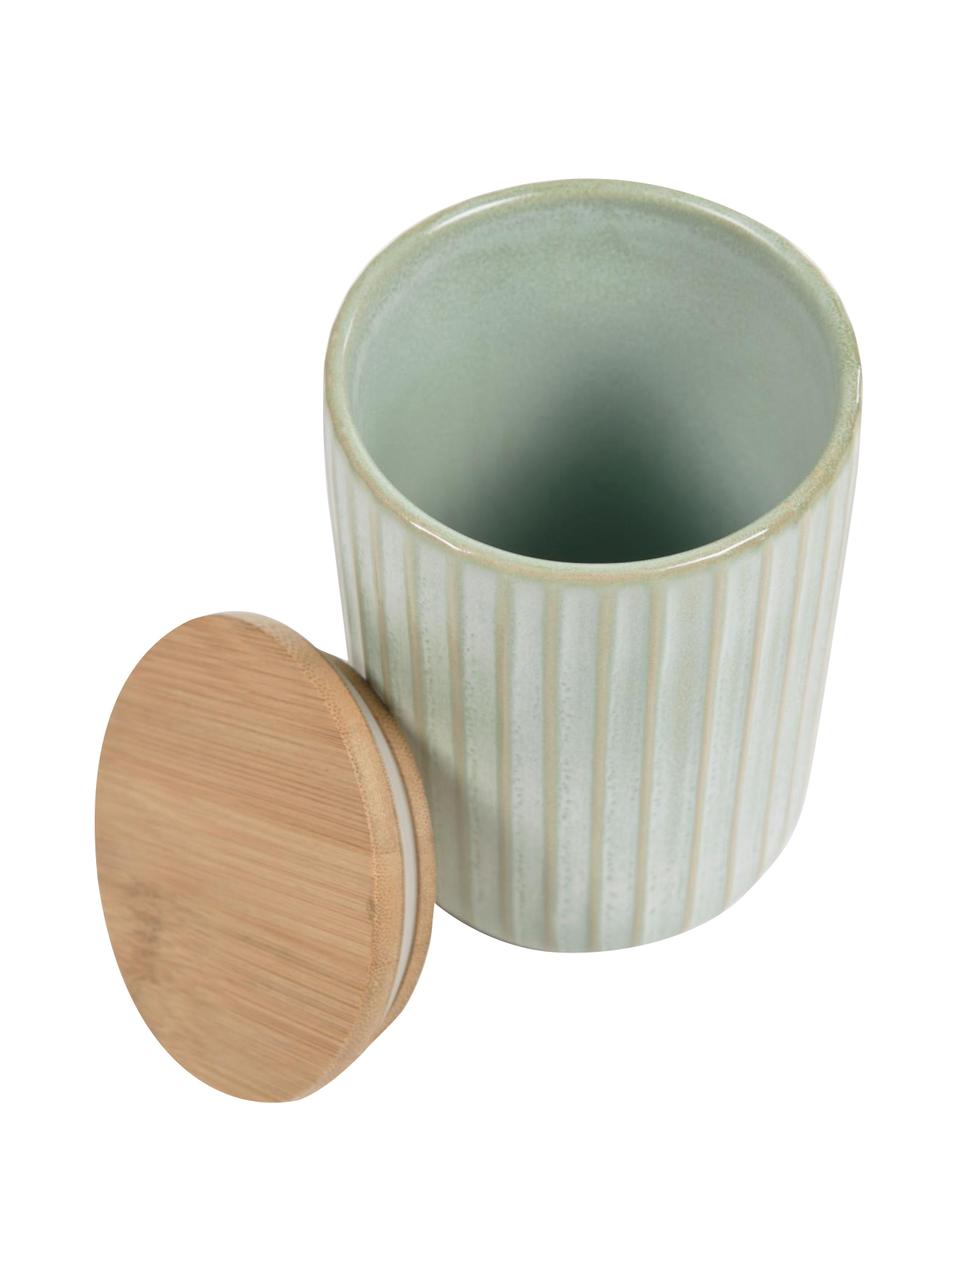 Contenitore in ceramica color verde chiaro Itziar, Contenitore: ceramica, Coperchio: legno, Verde chiaro, Ø 10 x Alt. 14 cm, 700 ml